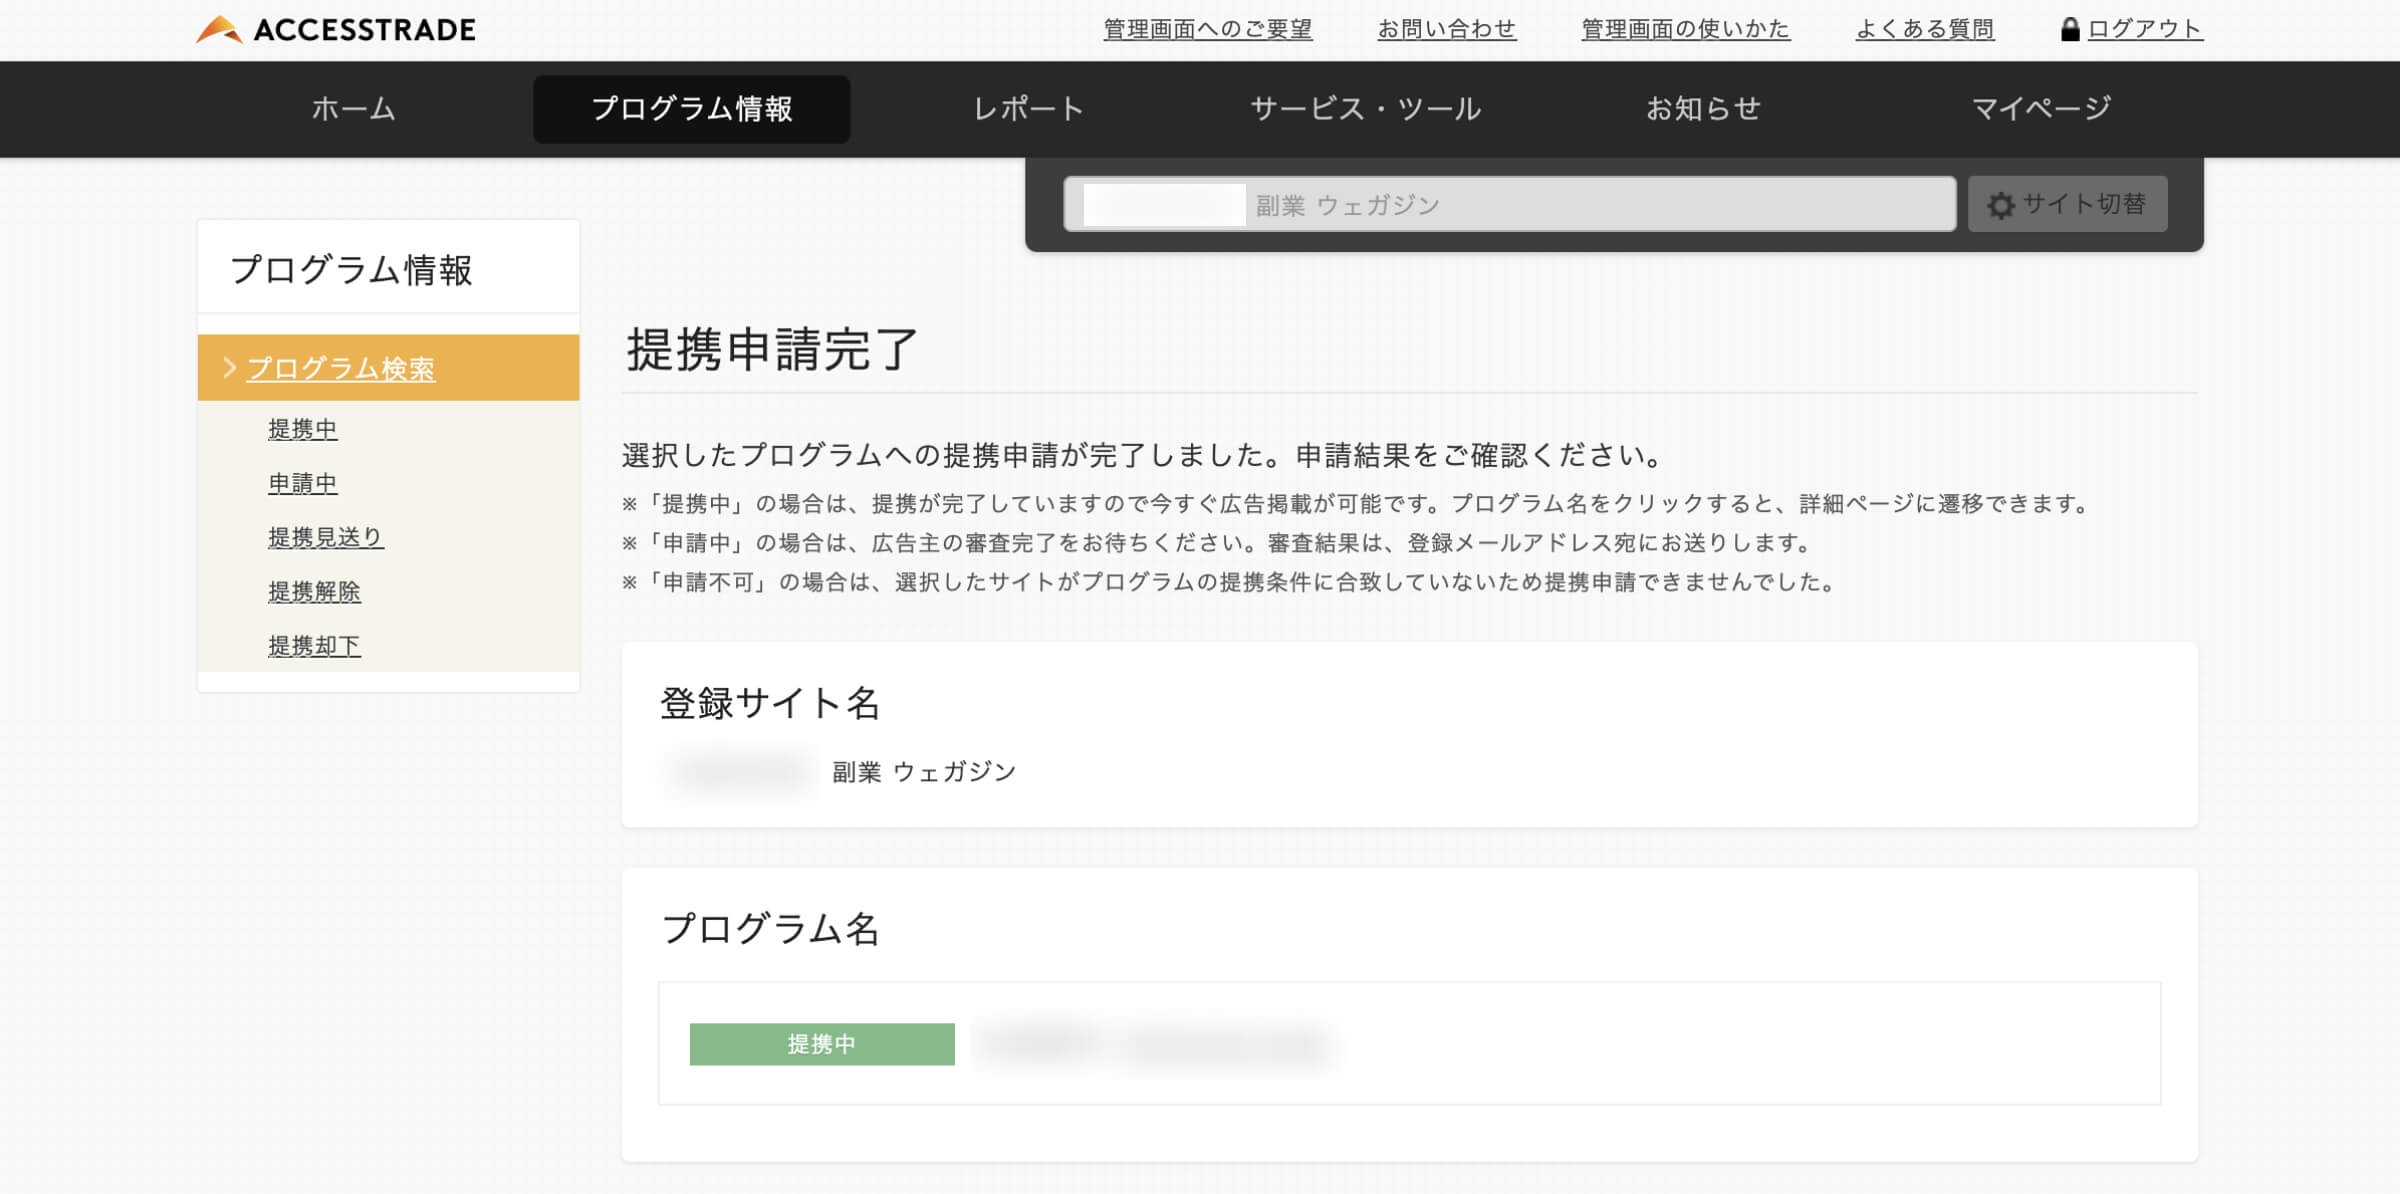 提携申請完了ボタンをクリック後「提携申請完了」のページが表示されます。